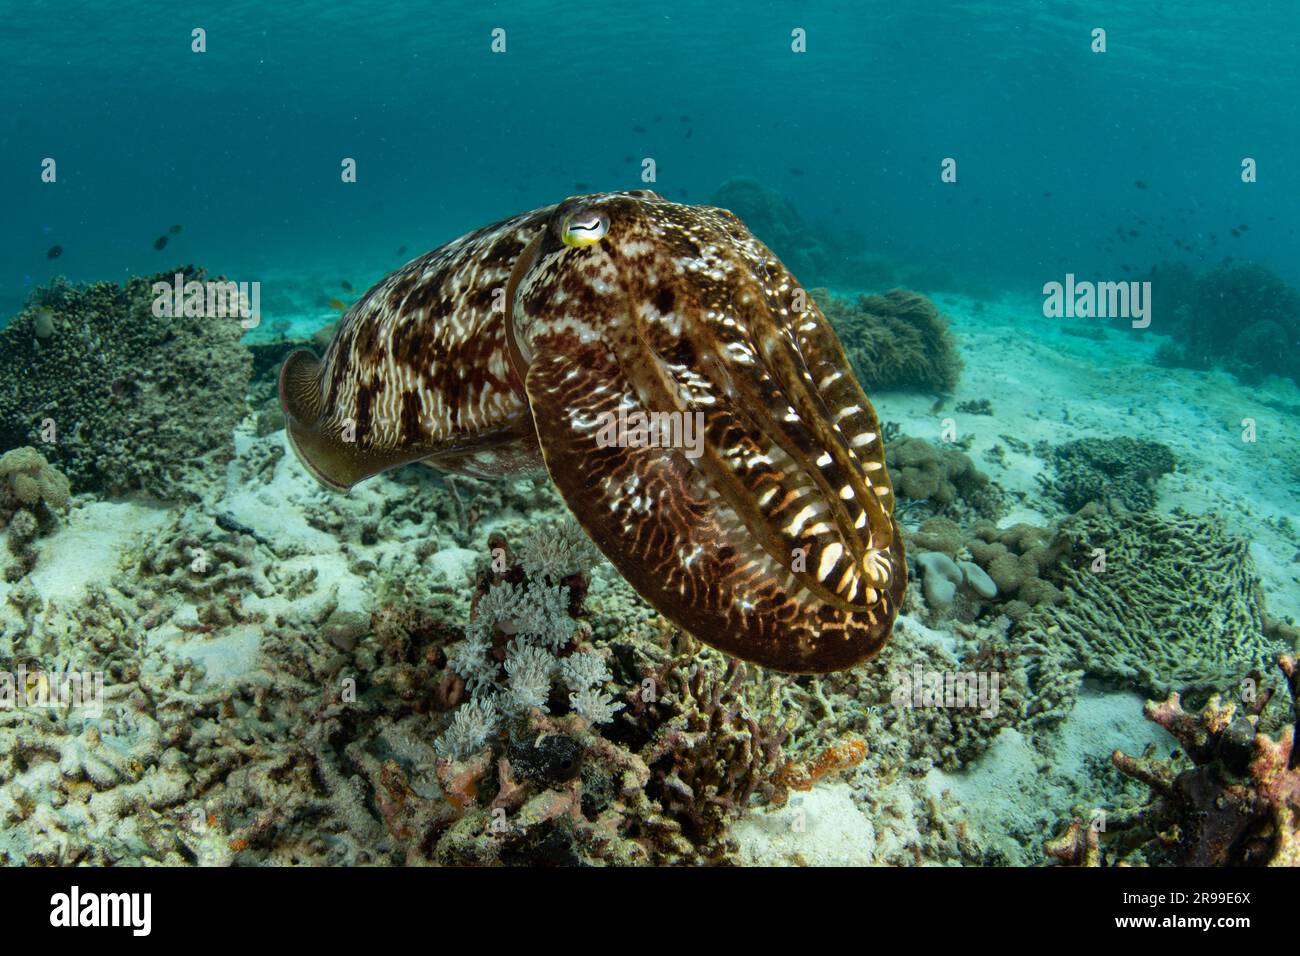 Ein Broadclub Tintenfisch, Sepia latimanus, schwebt über einem Korallenriff im Komodo-Nationalpark, Indonesien. Dieser Cephalopod ist hervorragend im Farbwechsel. Stockfoto